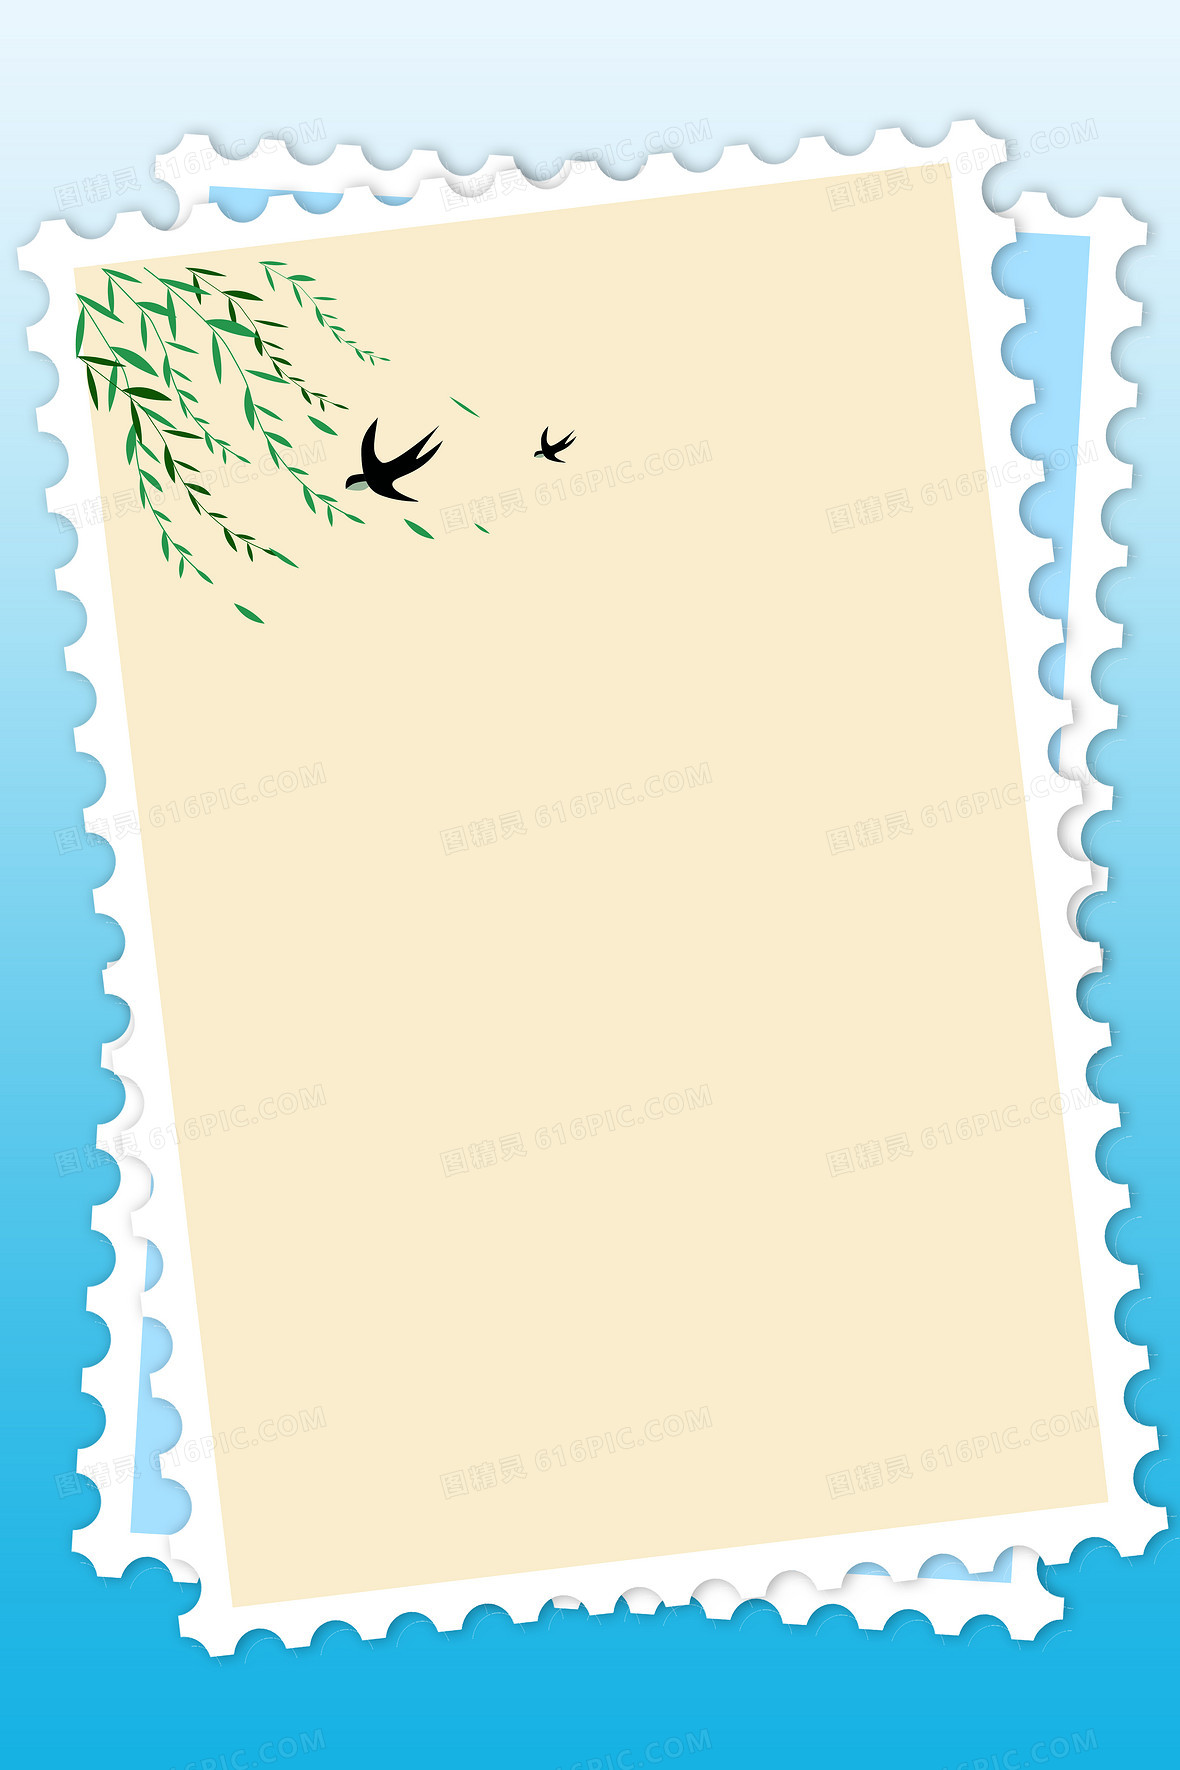 日邮票邮票背景邮递图精灵为您提供蓝色简约邮票春天插画背景免费下载